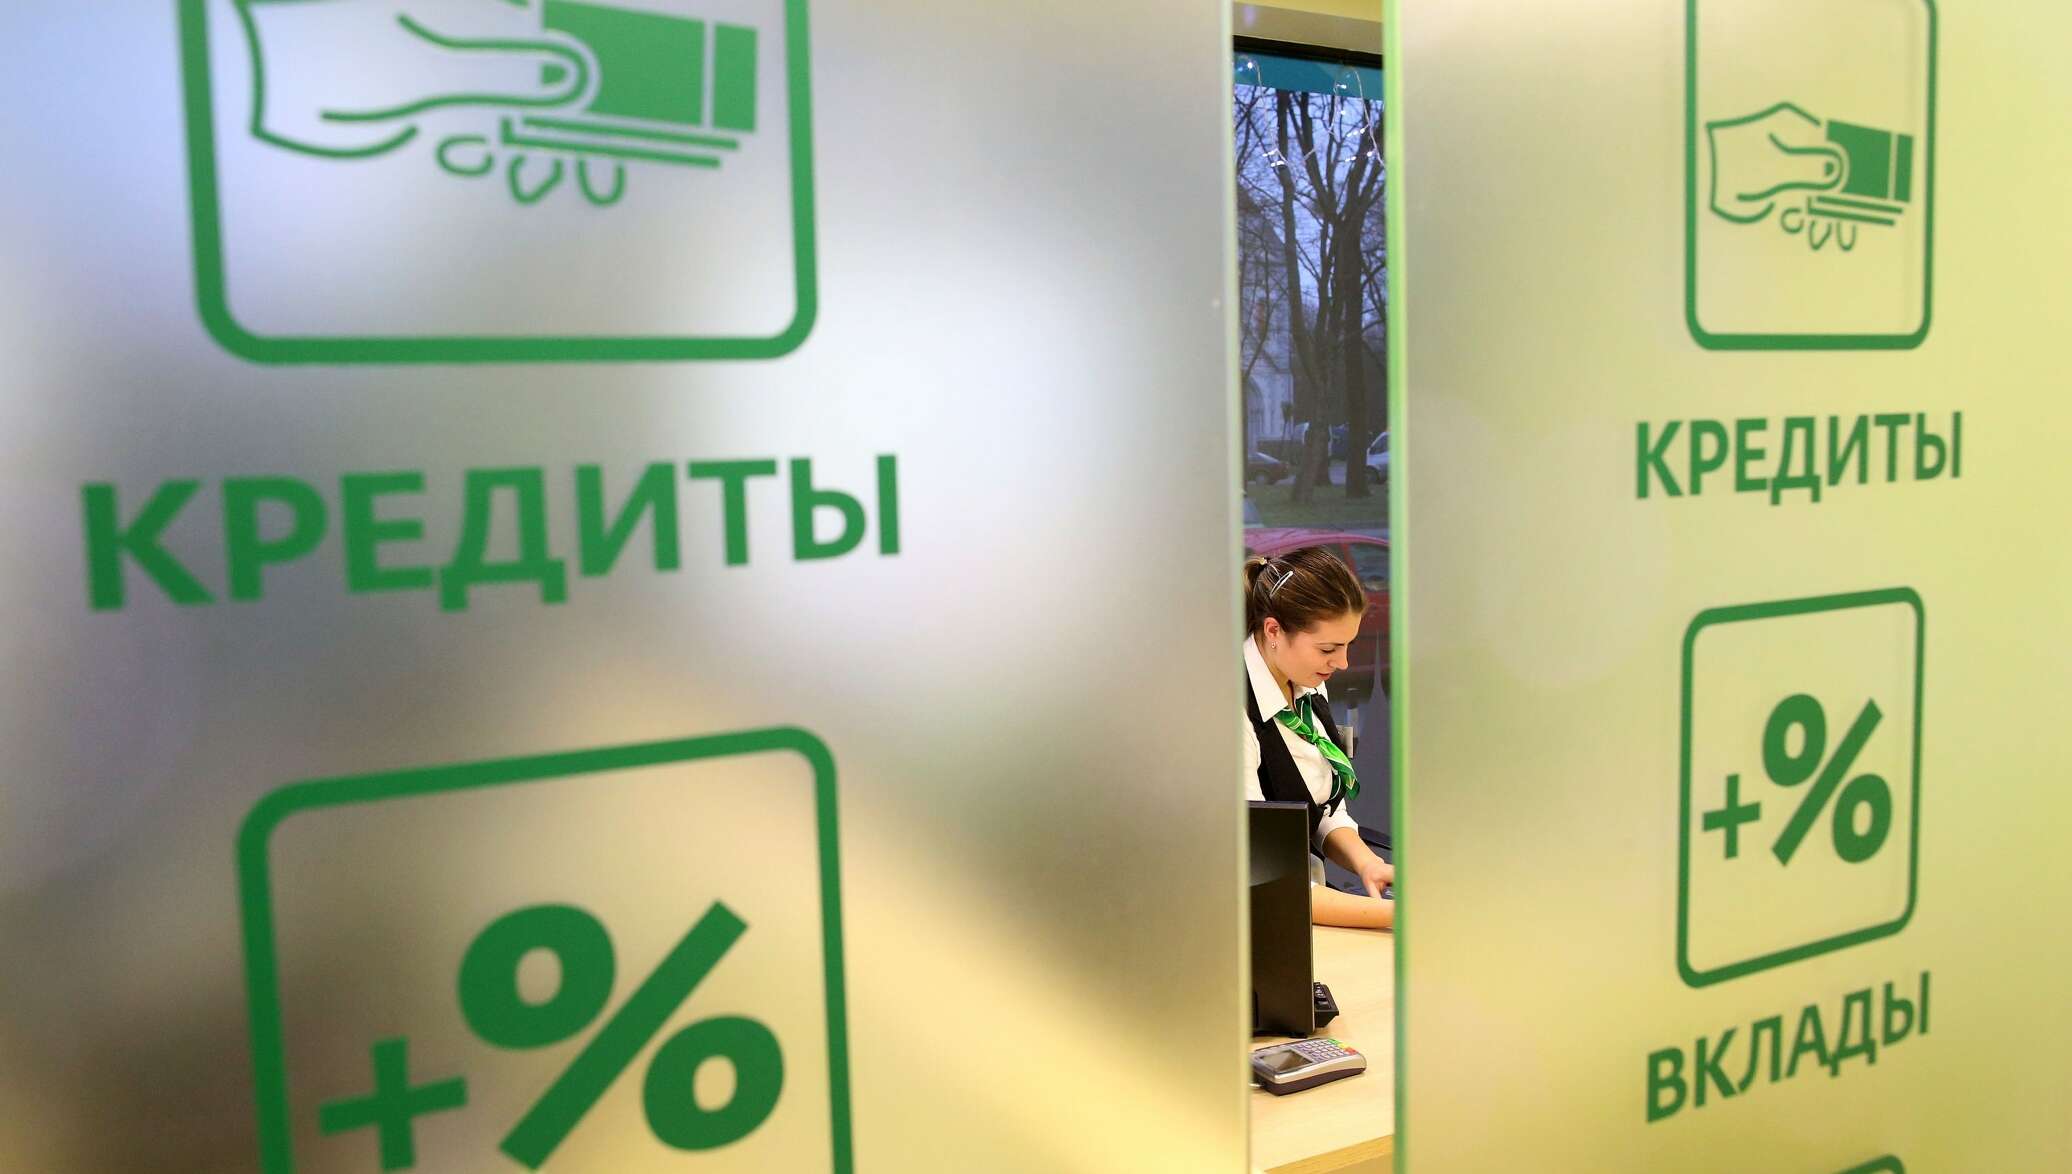 Россияне смогут отказываться от допуслуг по кредитам в течение месяца